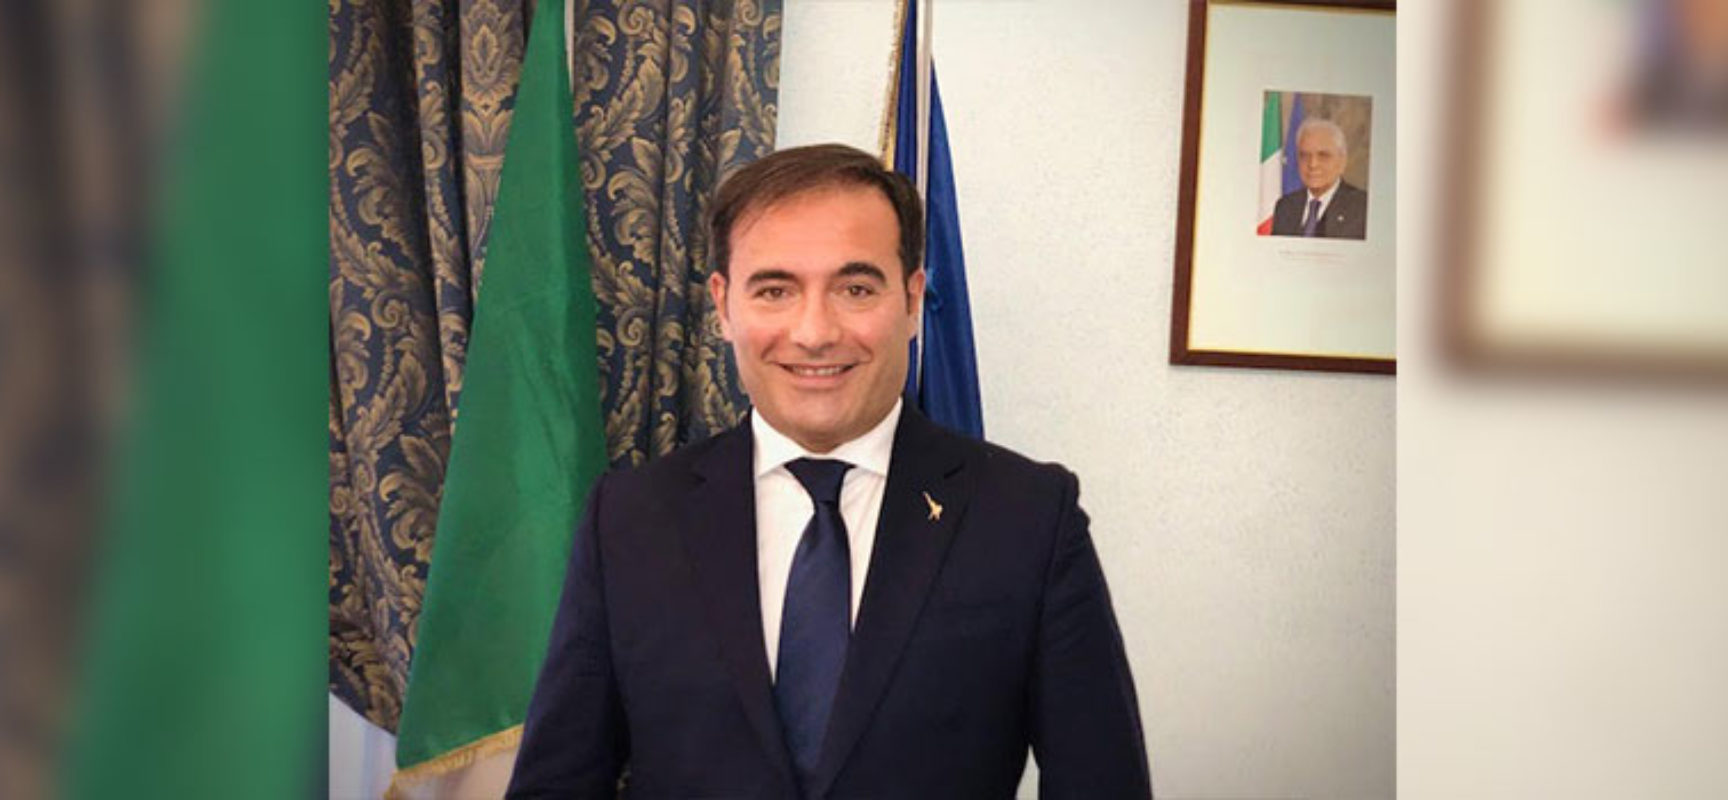 Sottosegretario Sasso in visita a Bisceglie: “Anno scolastico particolare, importante andare sui territori”